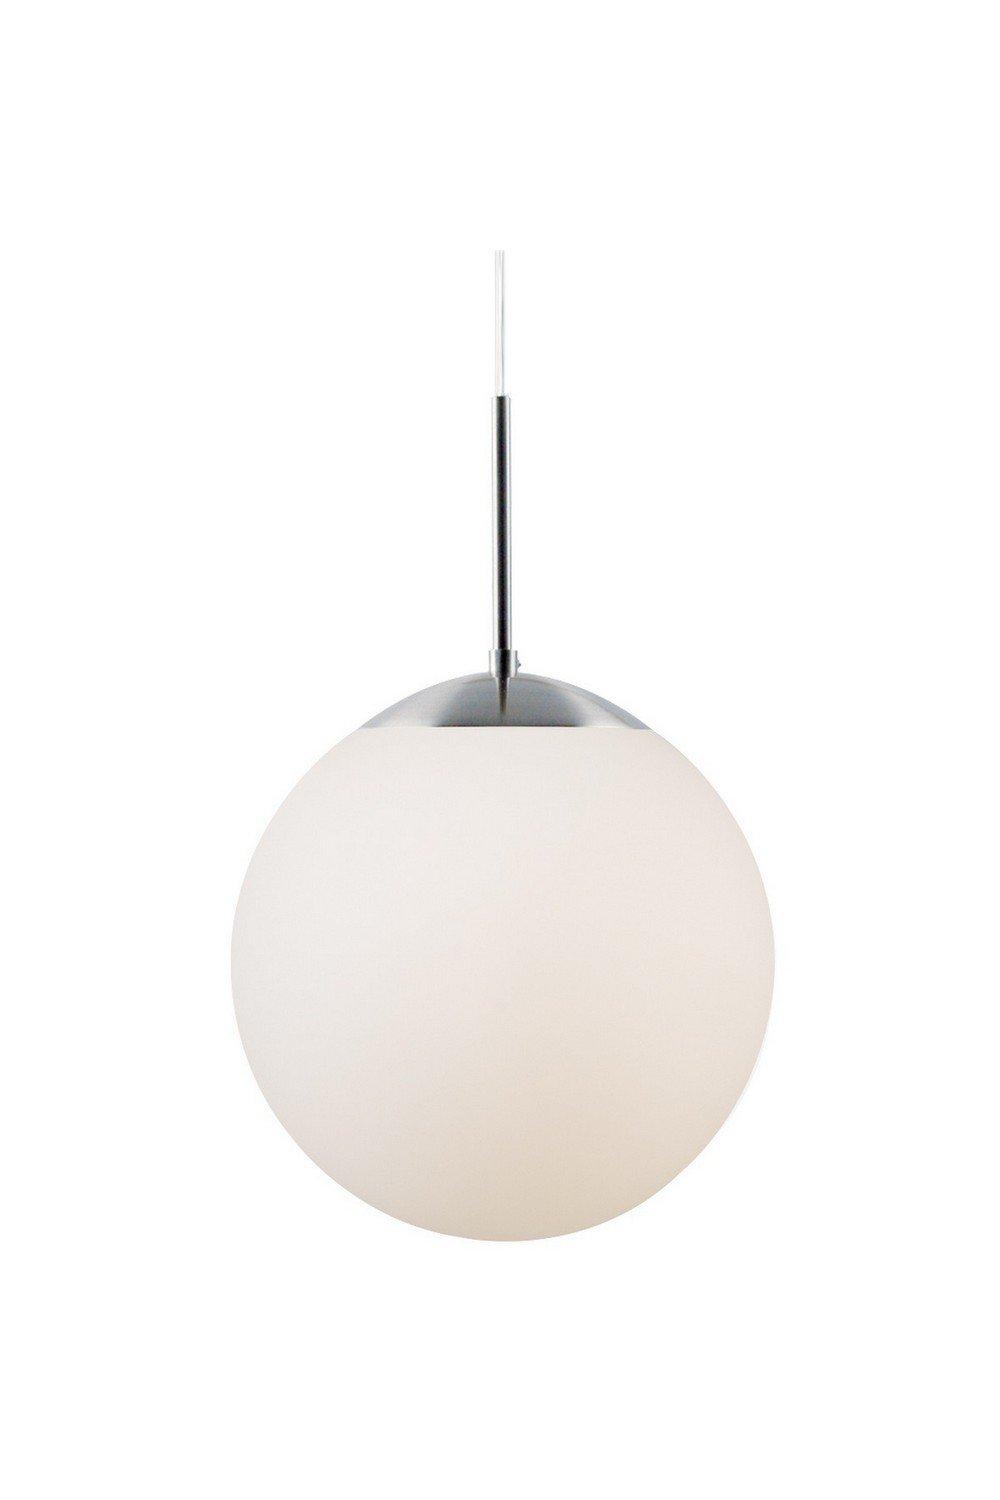 Cafe 30cm Globe Pendant Ceiling Light White E27